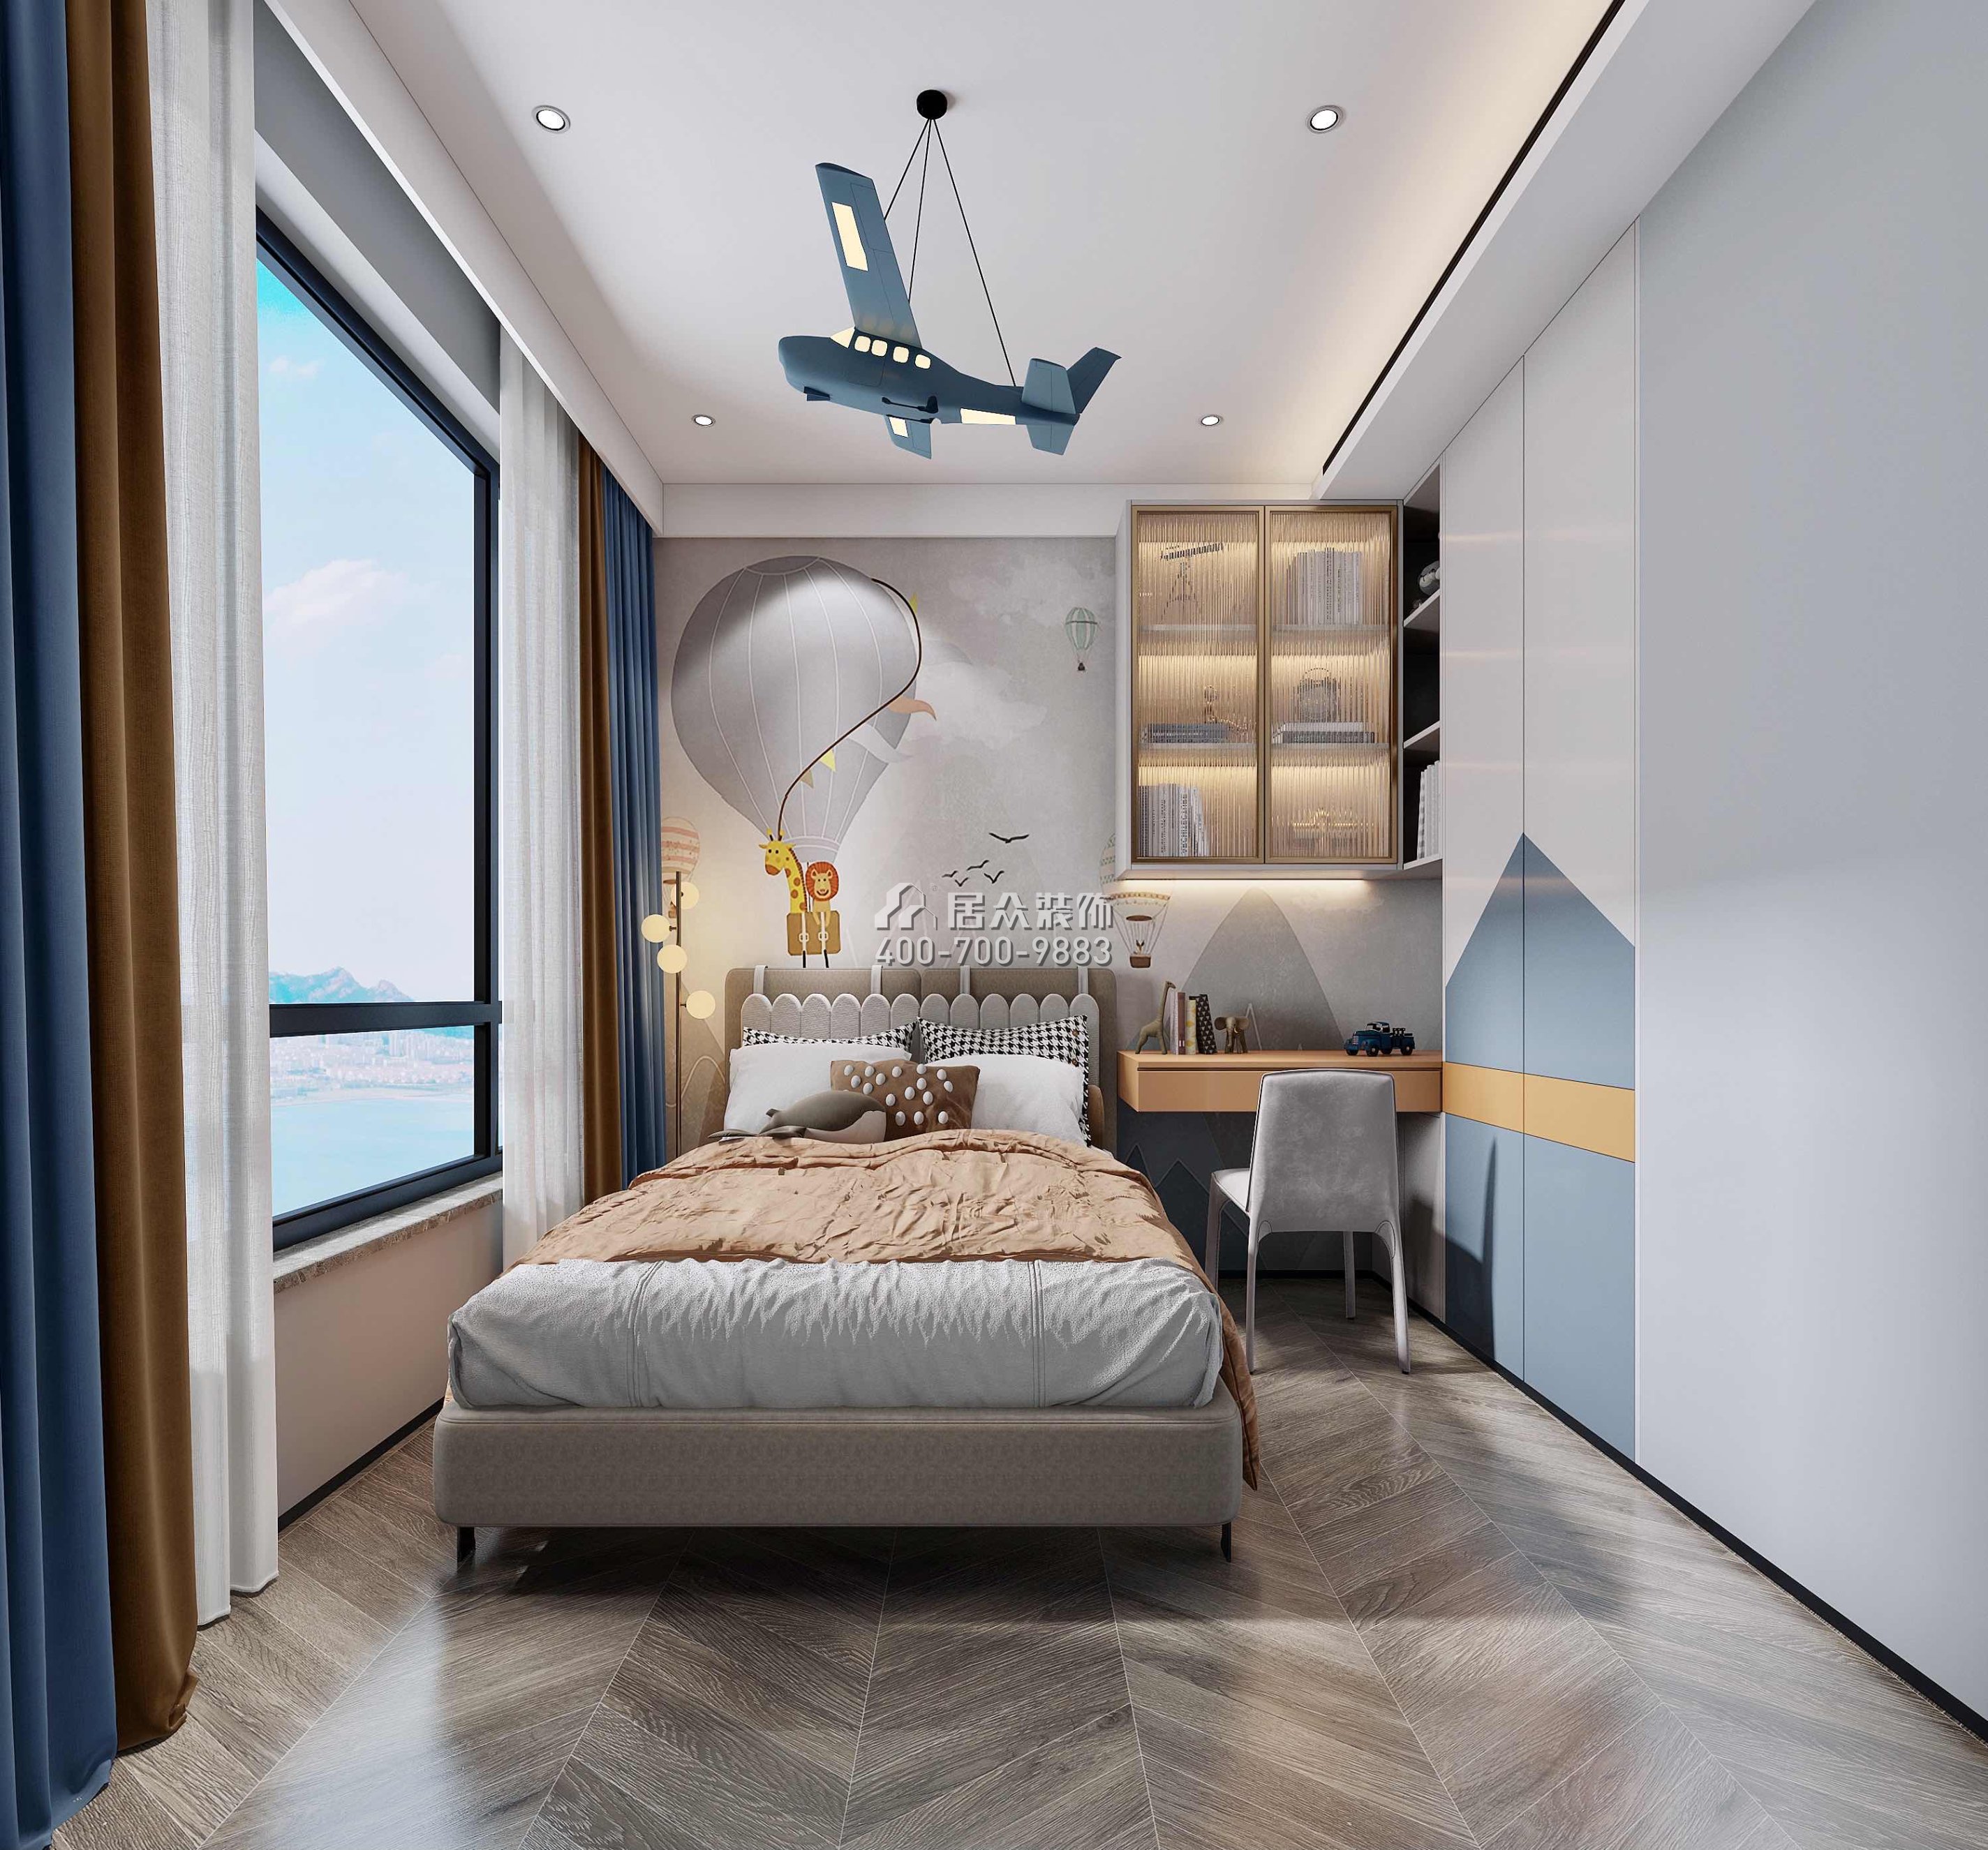 天健天驕南苑120平方米現代簡約風格平層戶型臥室裝修效果圖